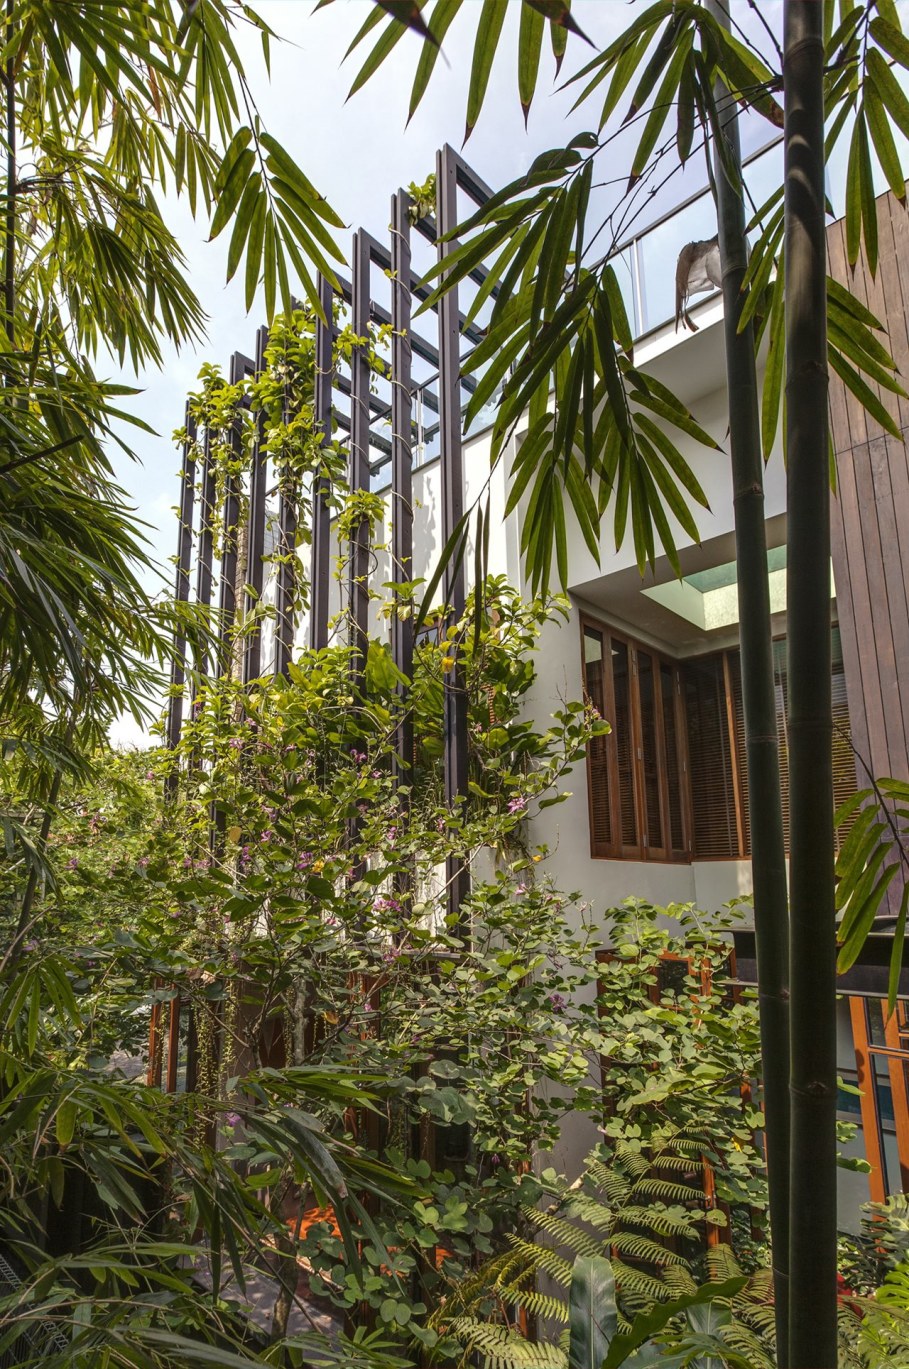 Tan's Garden Villa in Singapore - green vertical garden